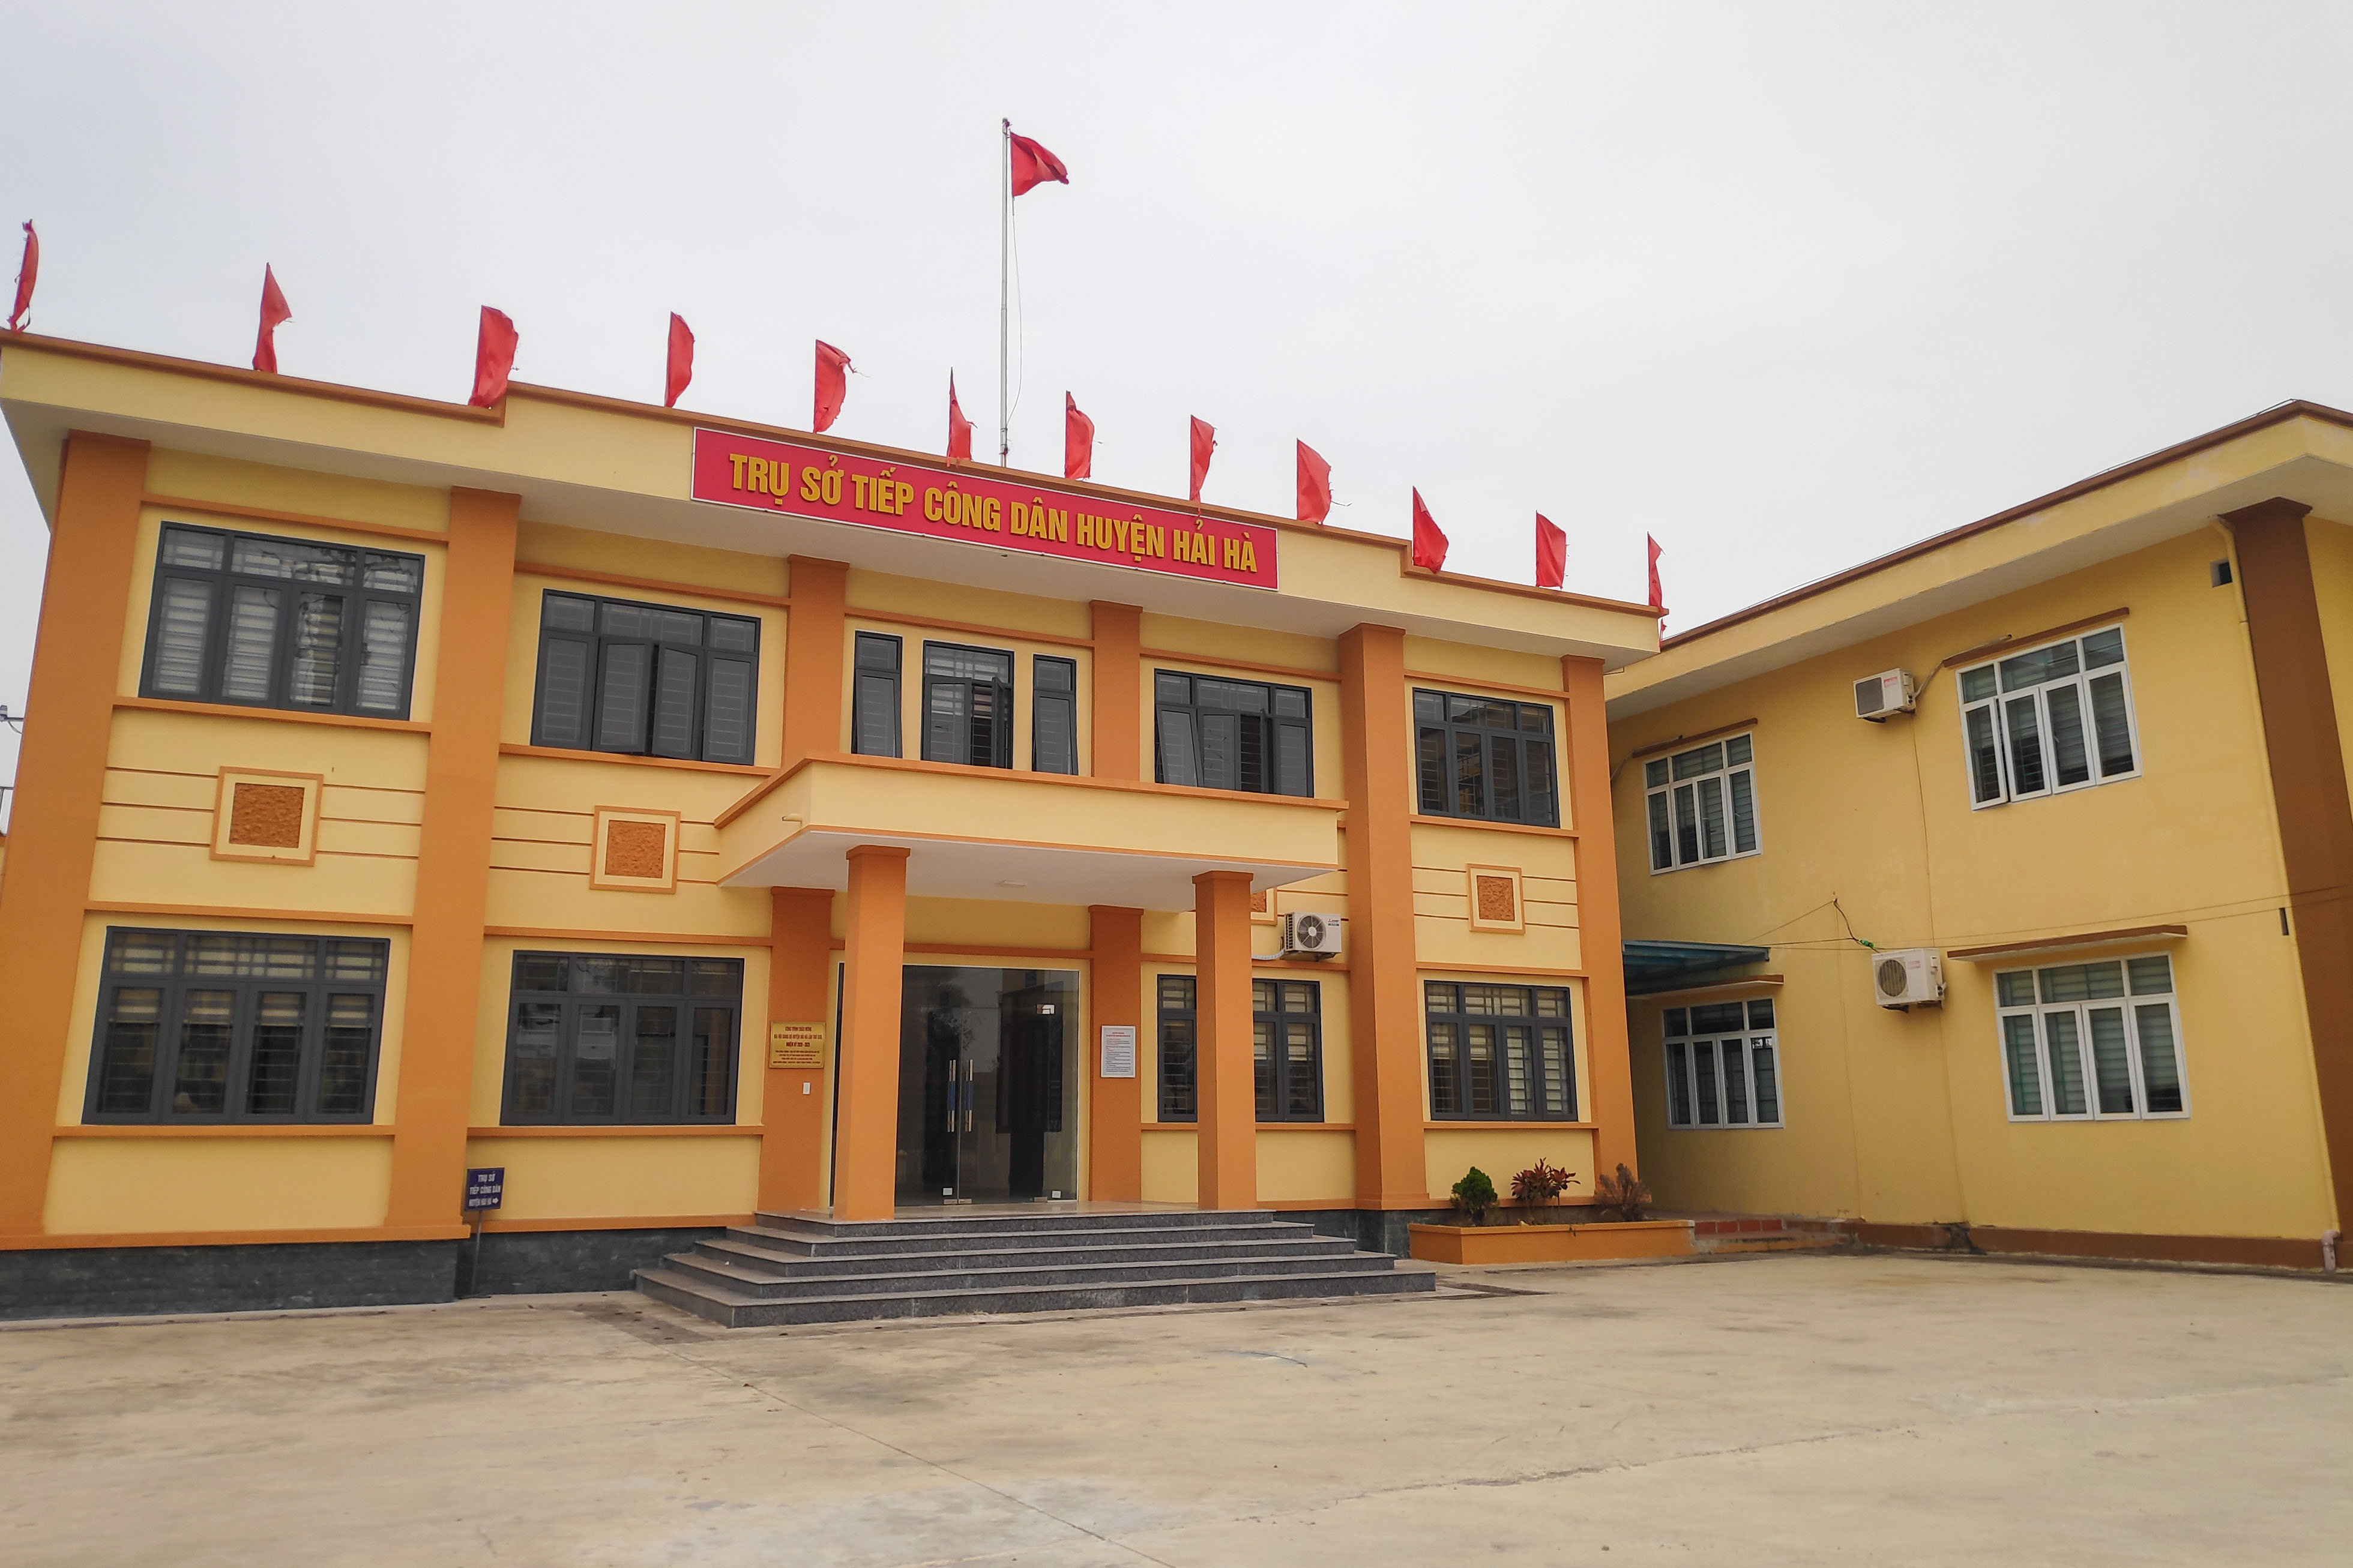 Trụ sở tiếp công dân huyện Hải Hà khánh thành tháng 7/2020, là công trình gắn biển chào mừng Đại hội Đảng bộ huyện lần thứ XXII.